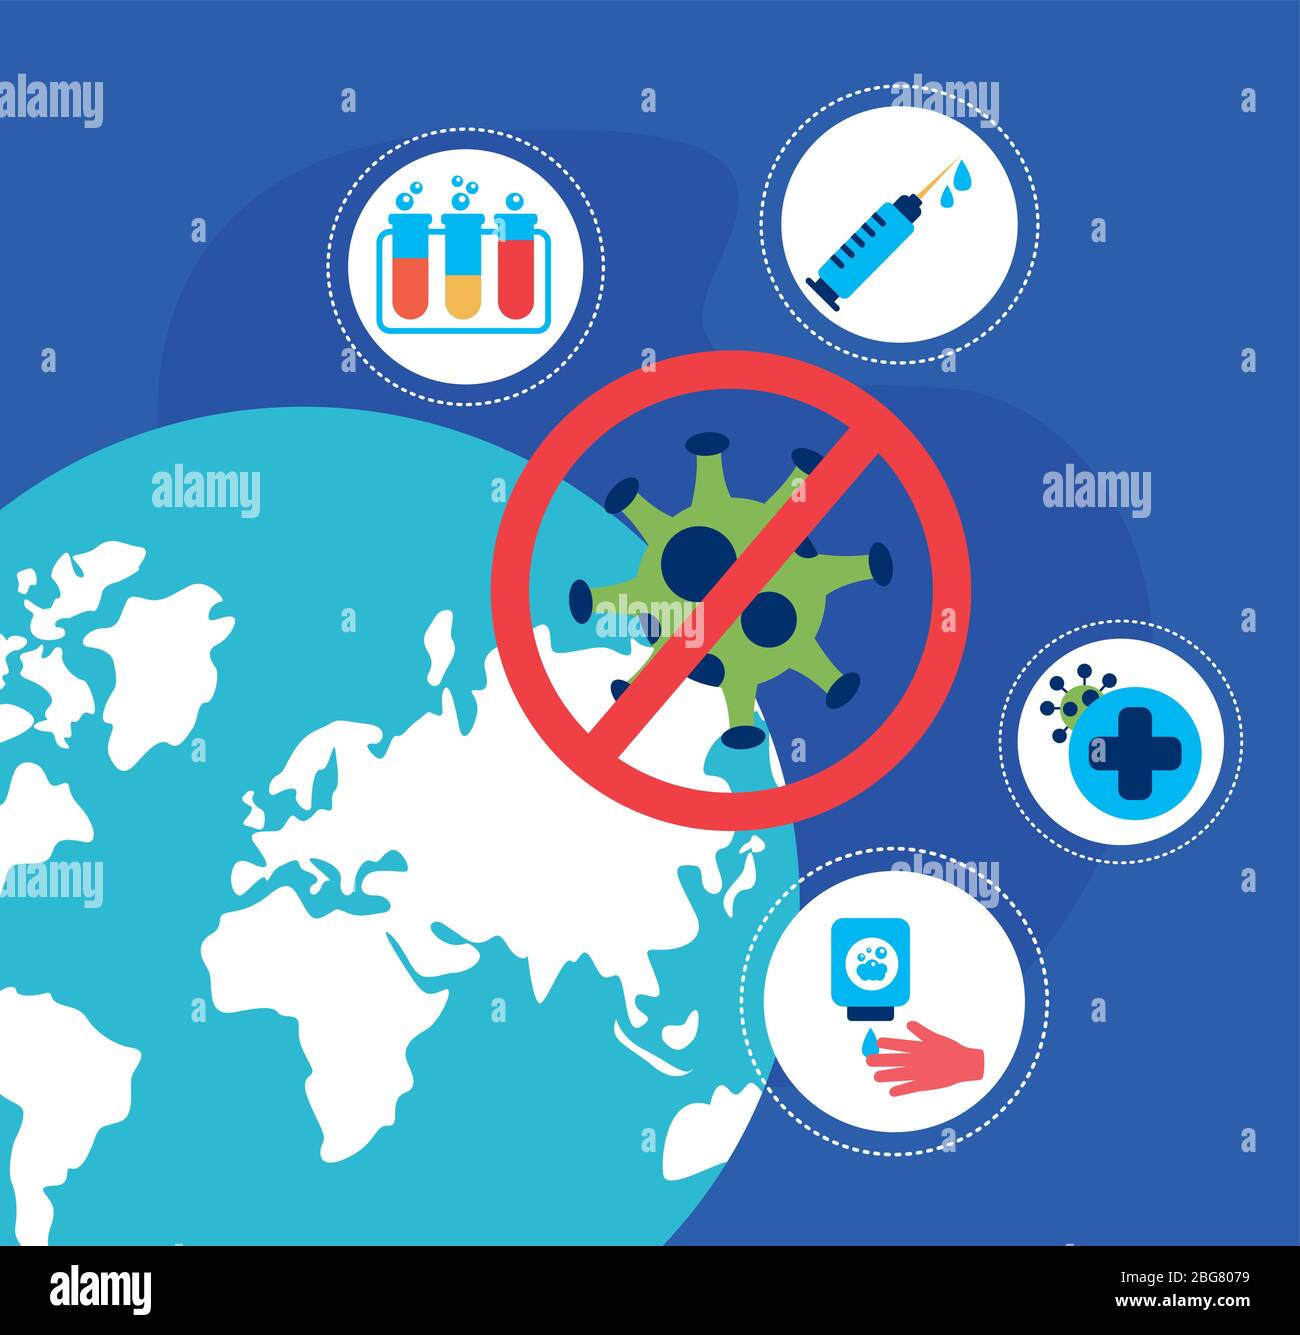 affiche de la pandémie du covid19 avec la planète terre Illustration de Vecteur